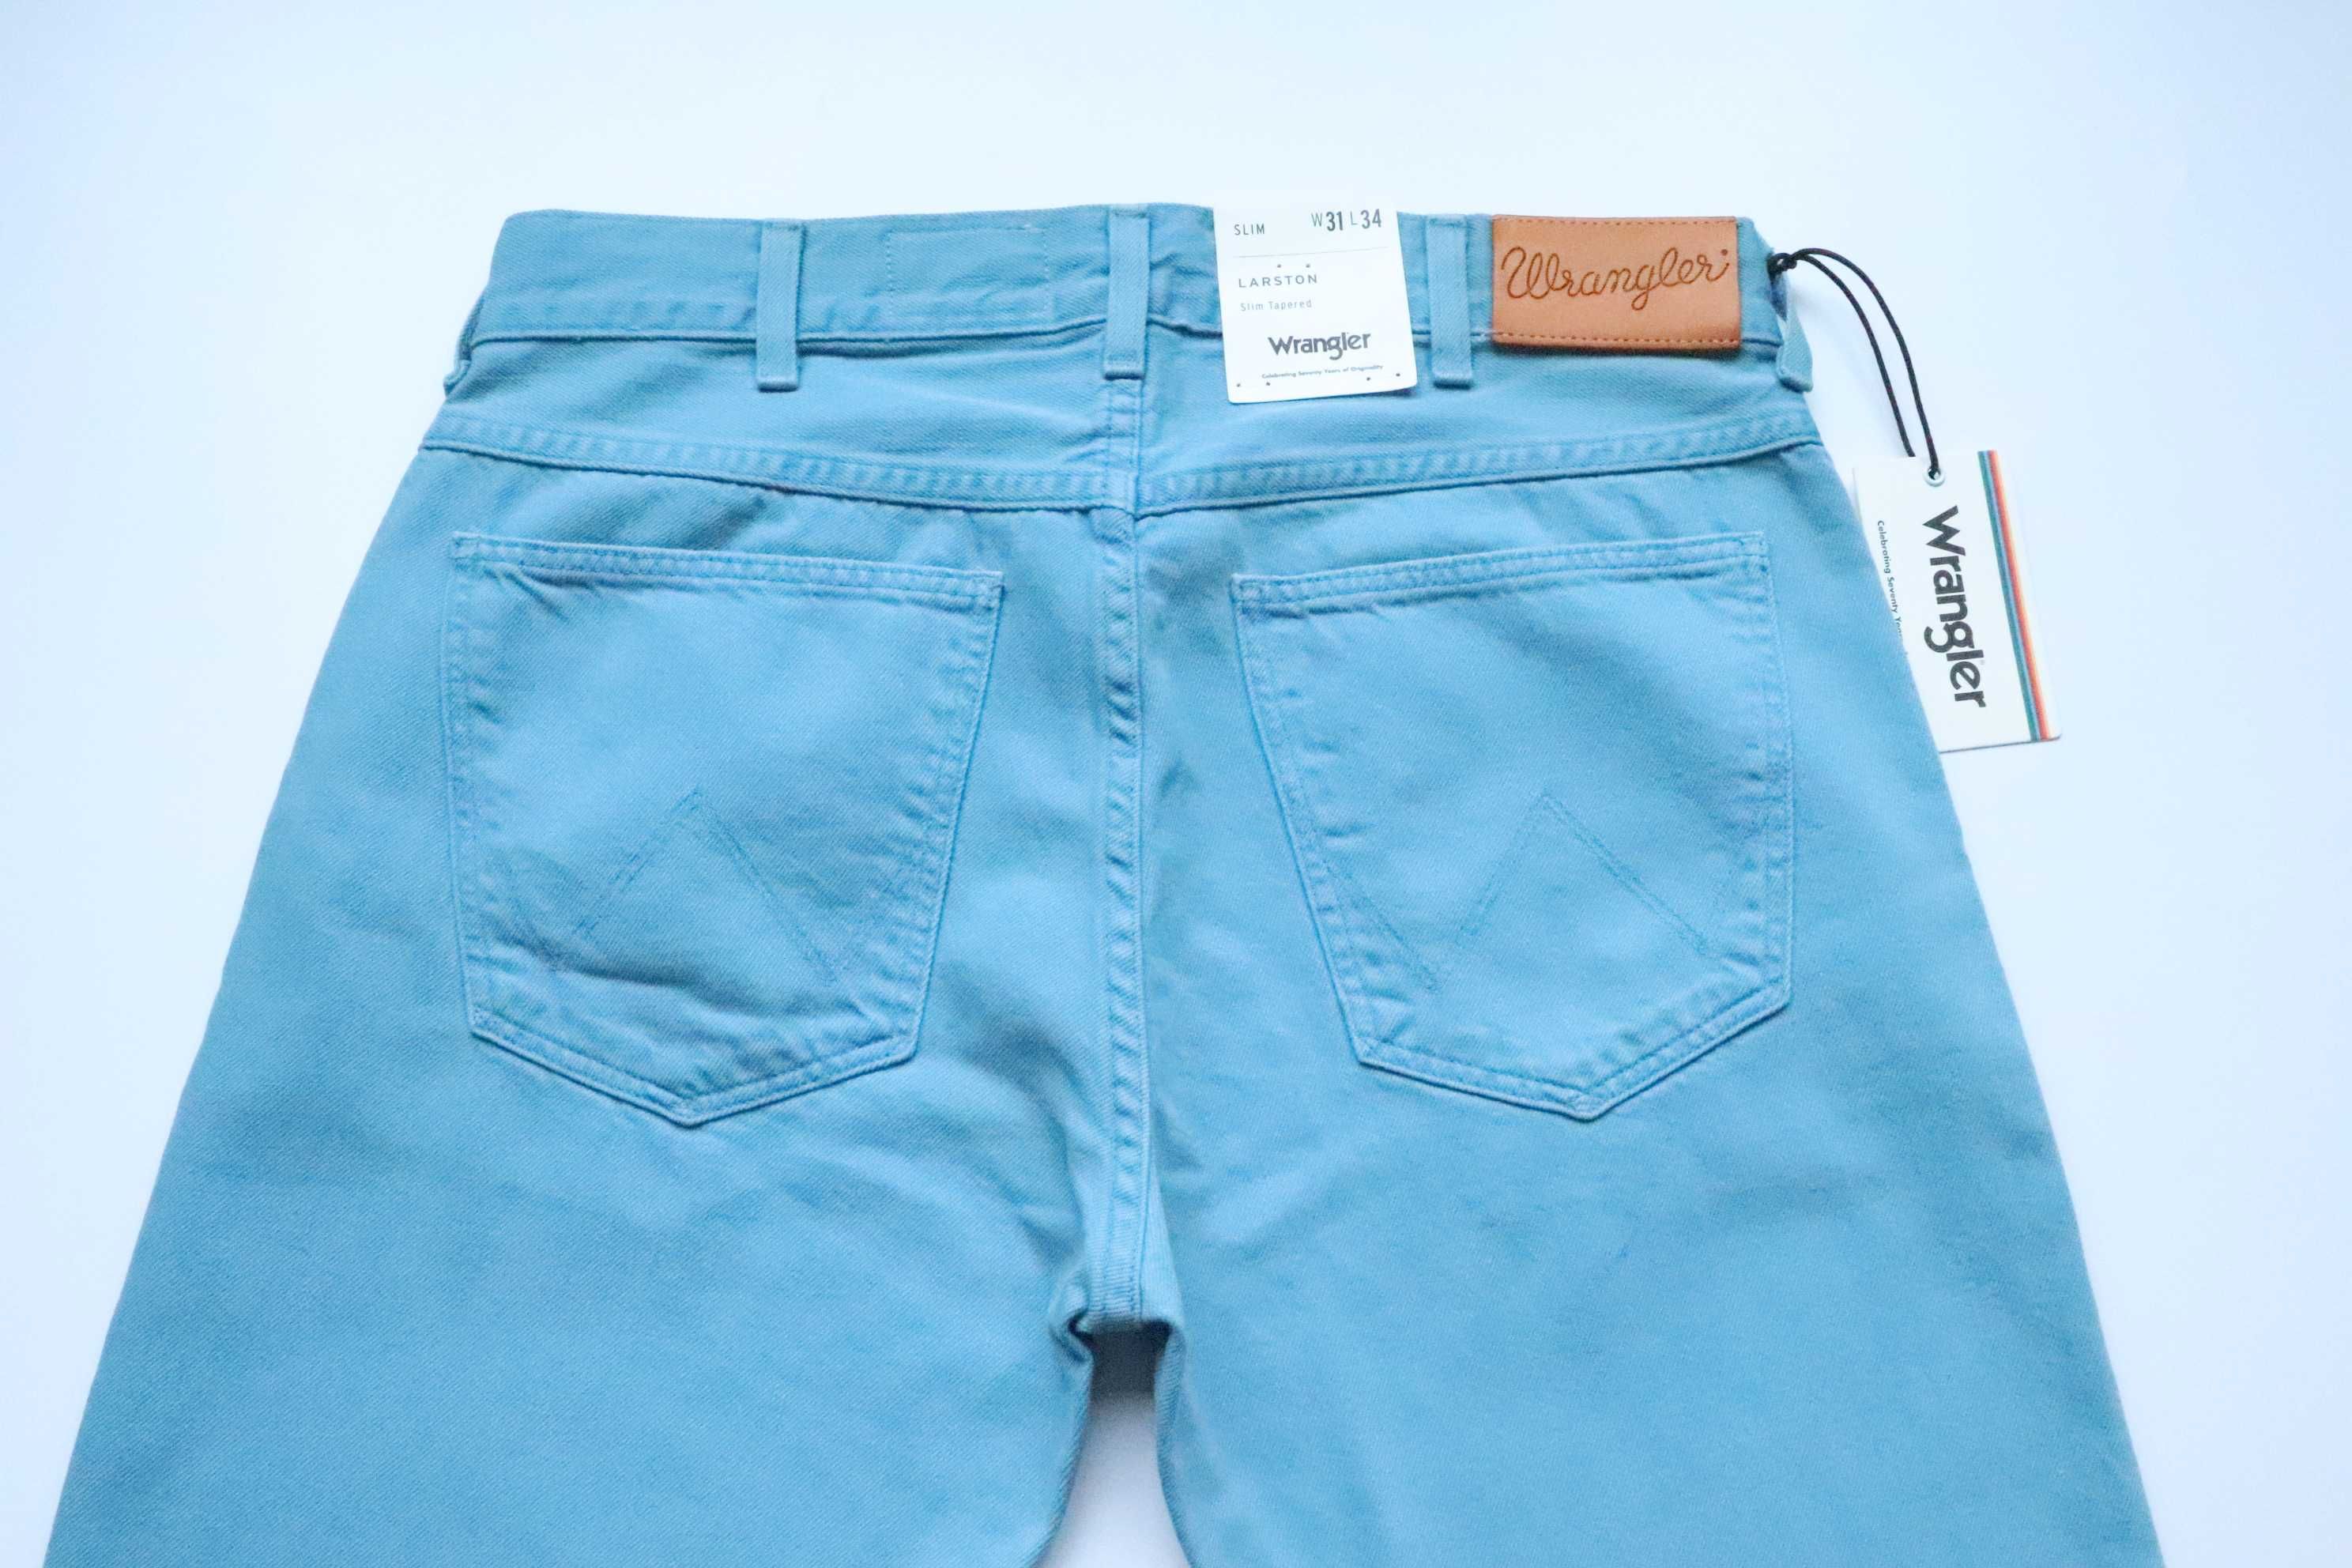 WRANGLER LARSTON W31 L34 męskie spodnie jeansy slim fit nowe